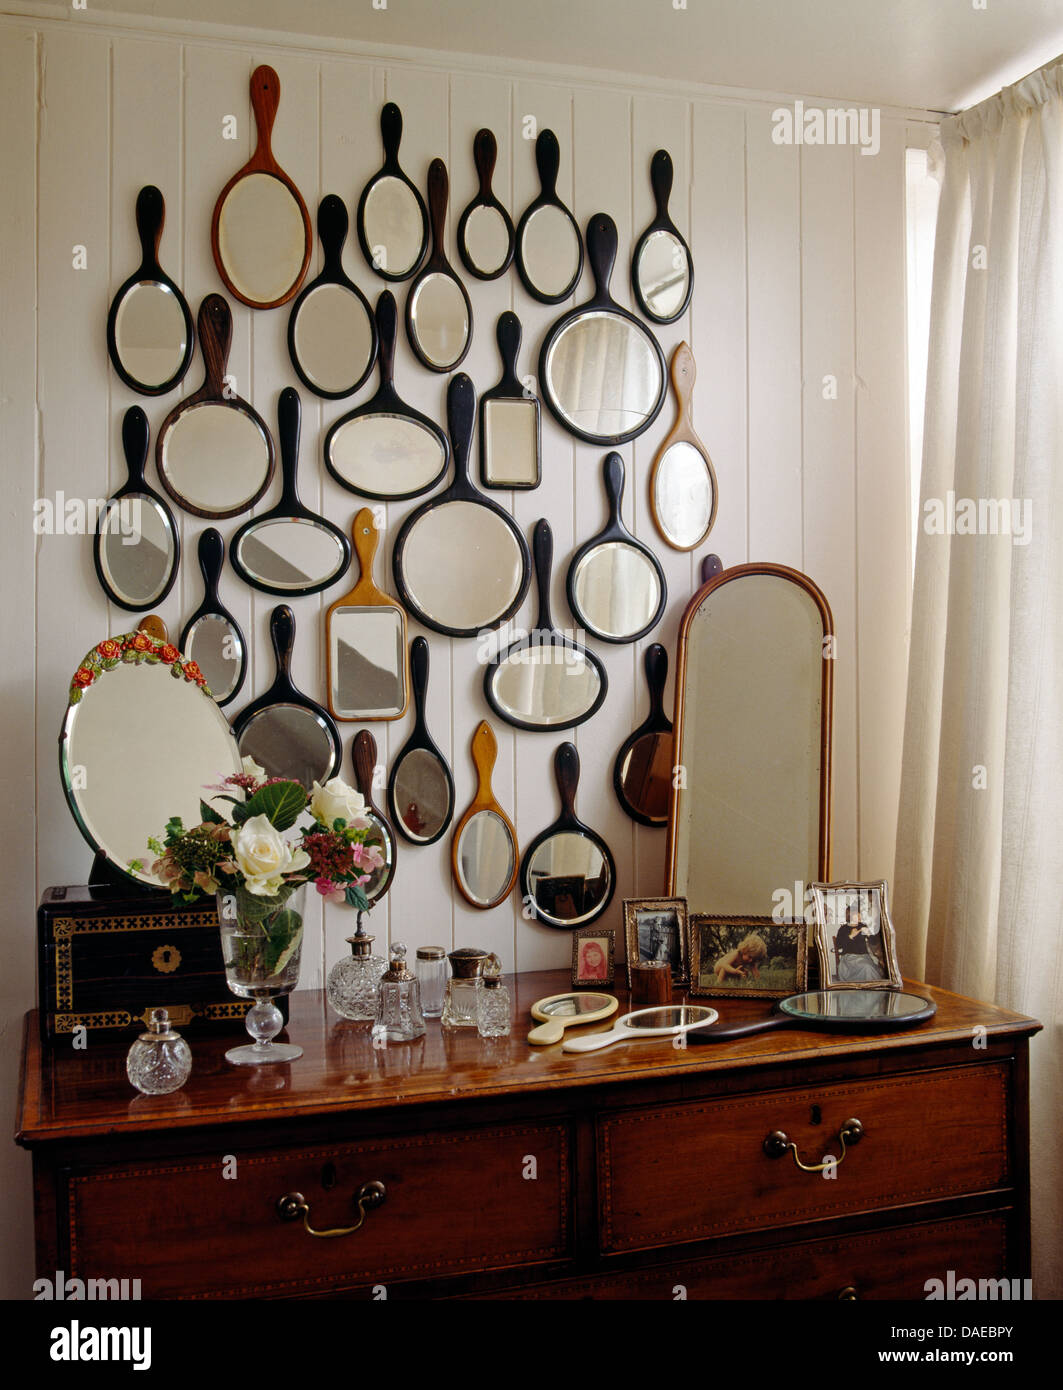 Collection de meubles anciens miroirs à main au-dessus de commode avec miroir étroit et collection de Flacons à parfum vintage Banque D'Images